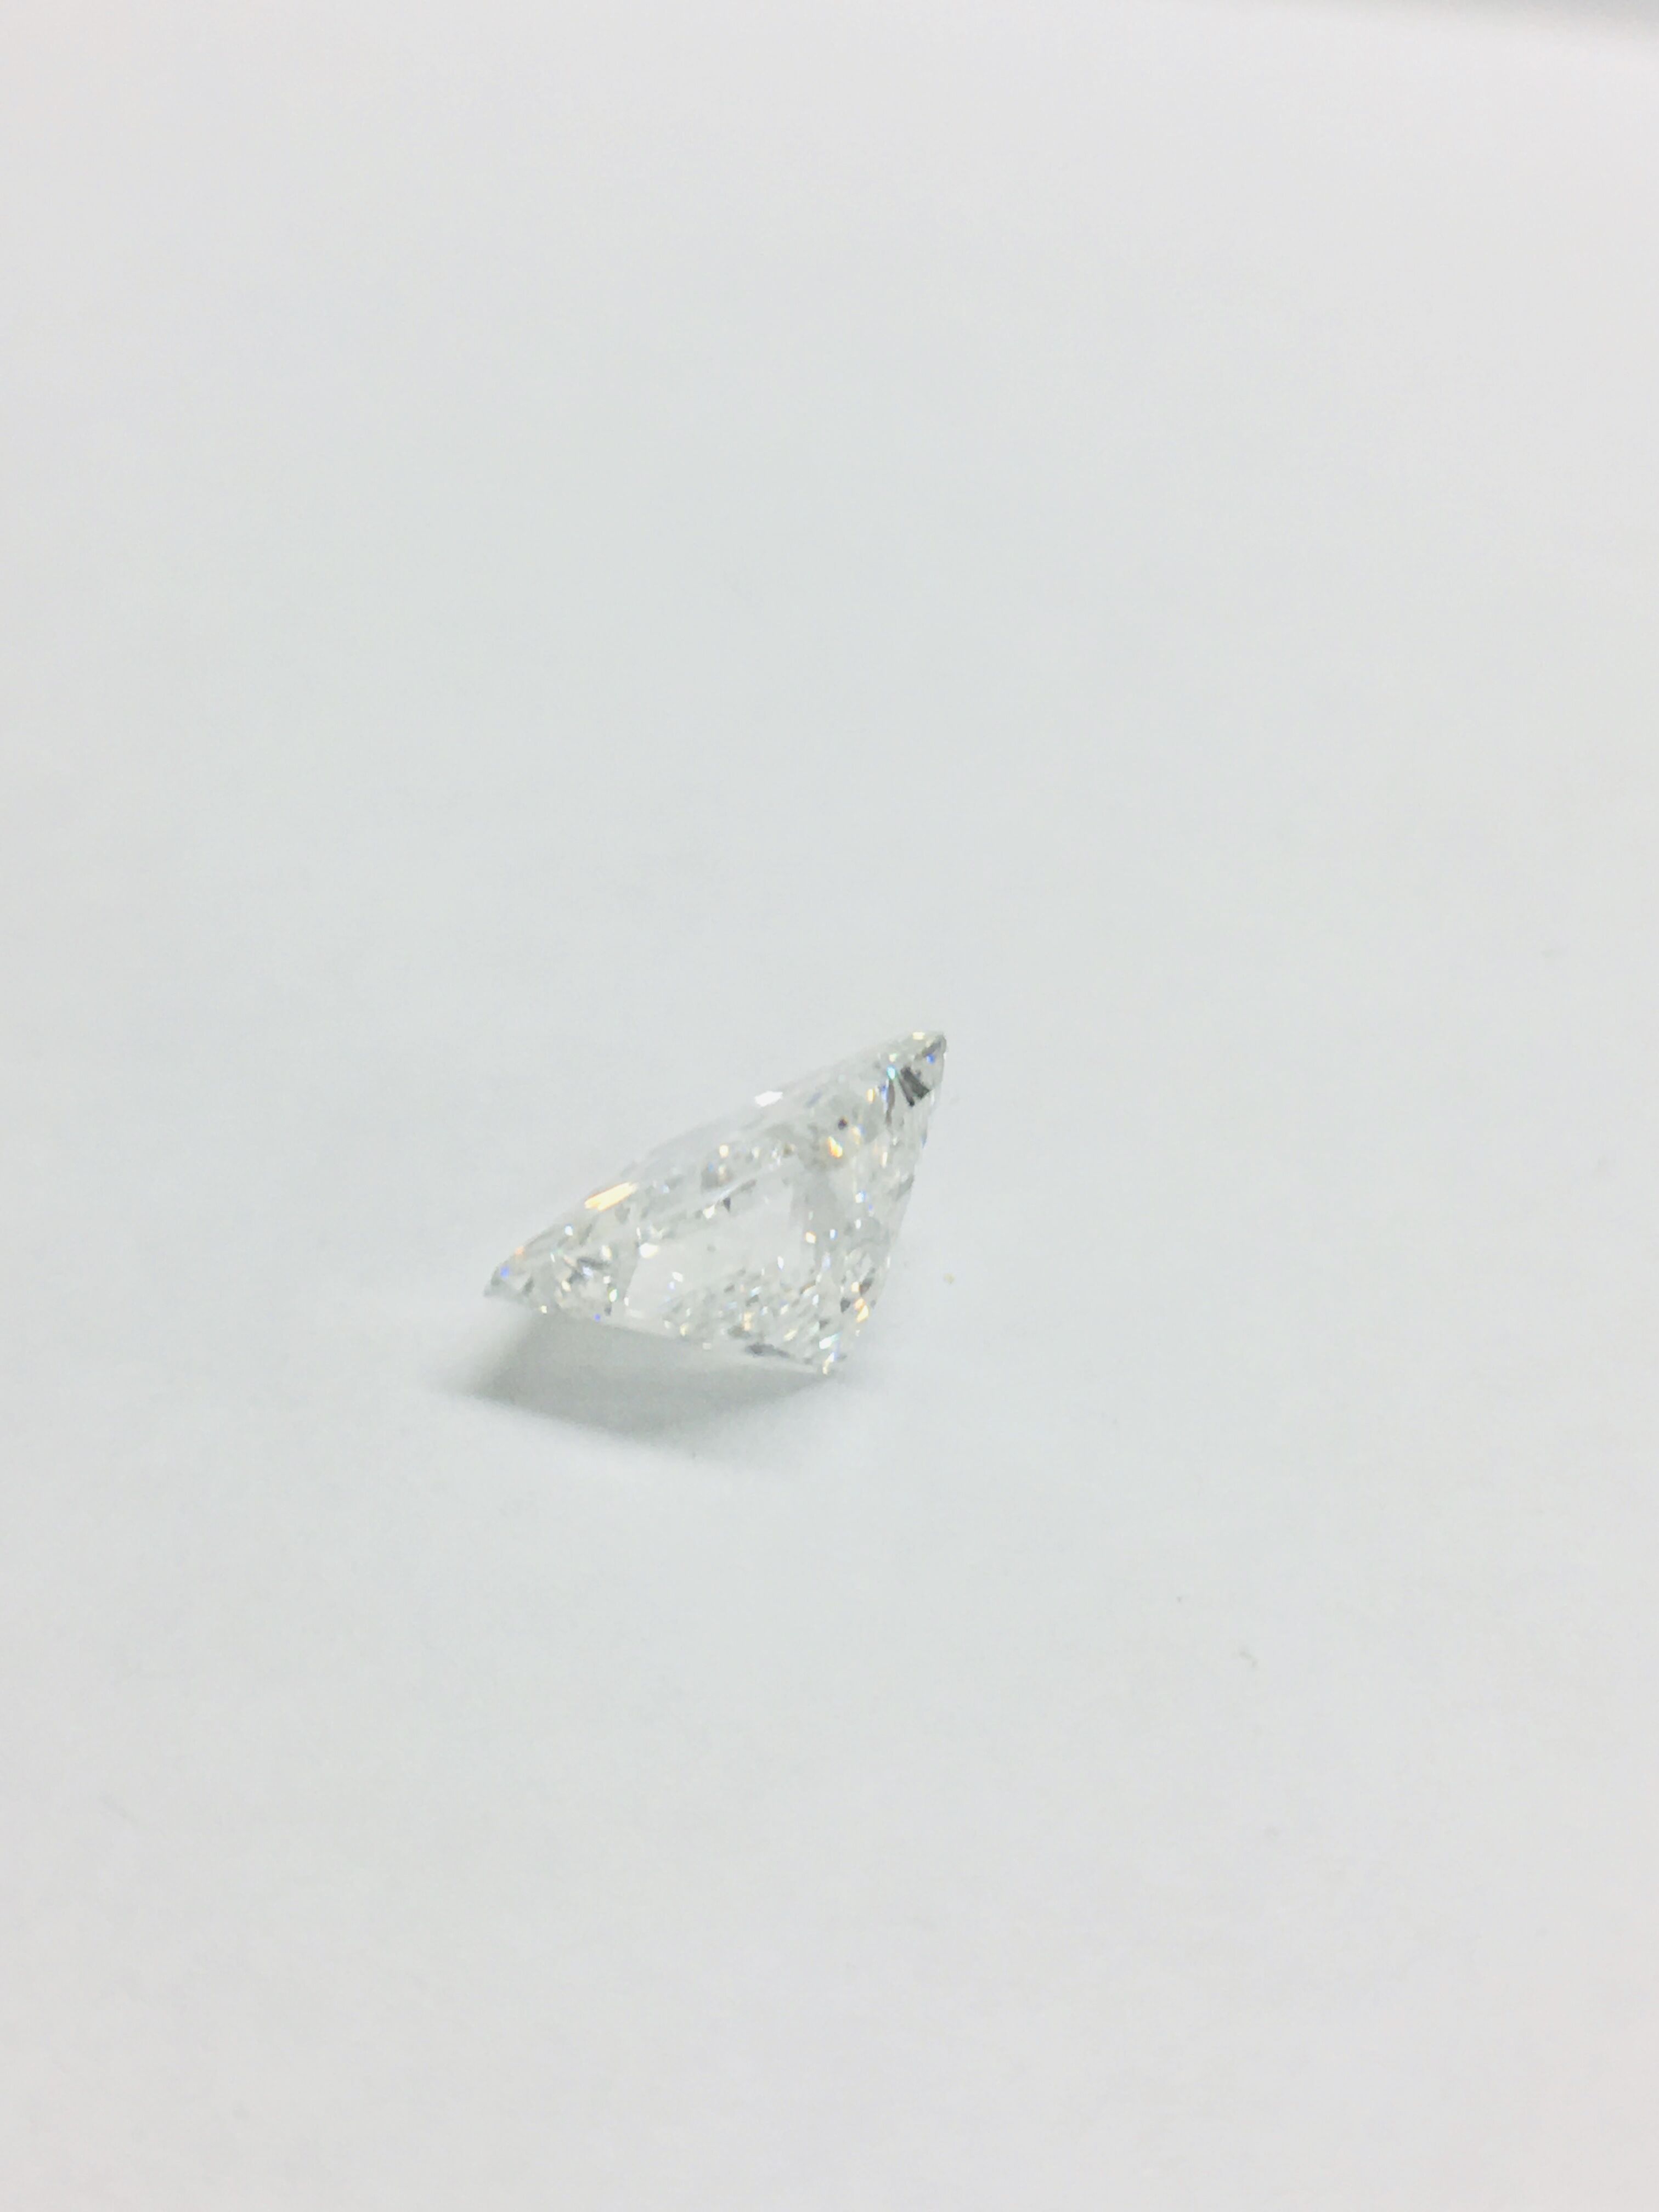 1.95ct Princess cut Diamond - Image 8 of 42